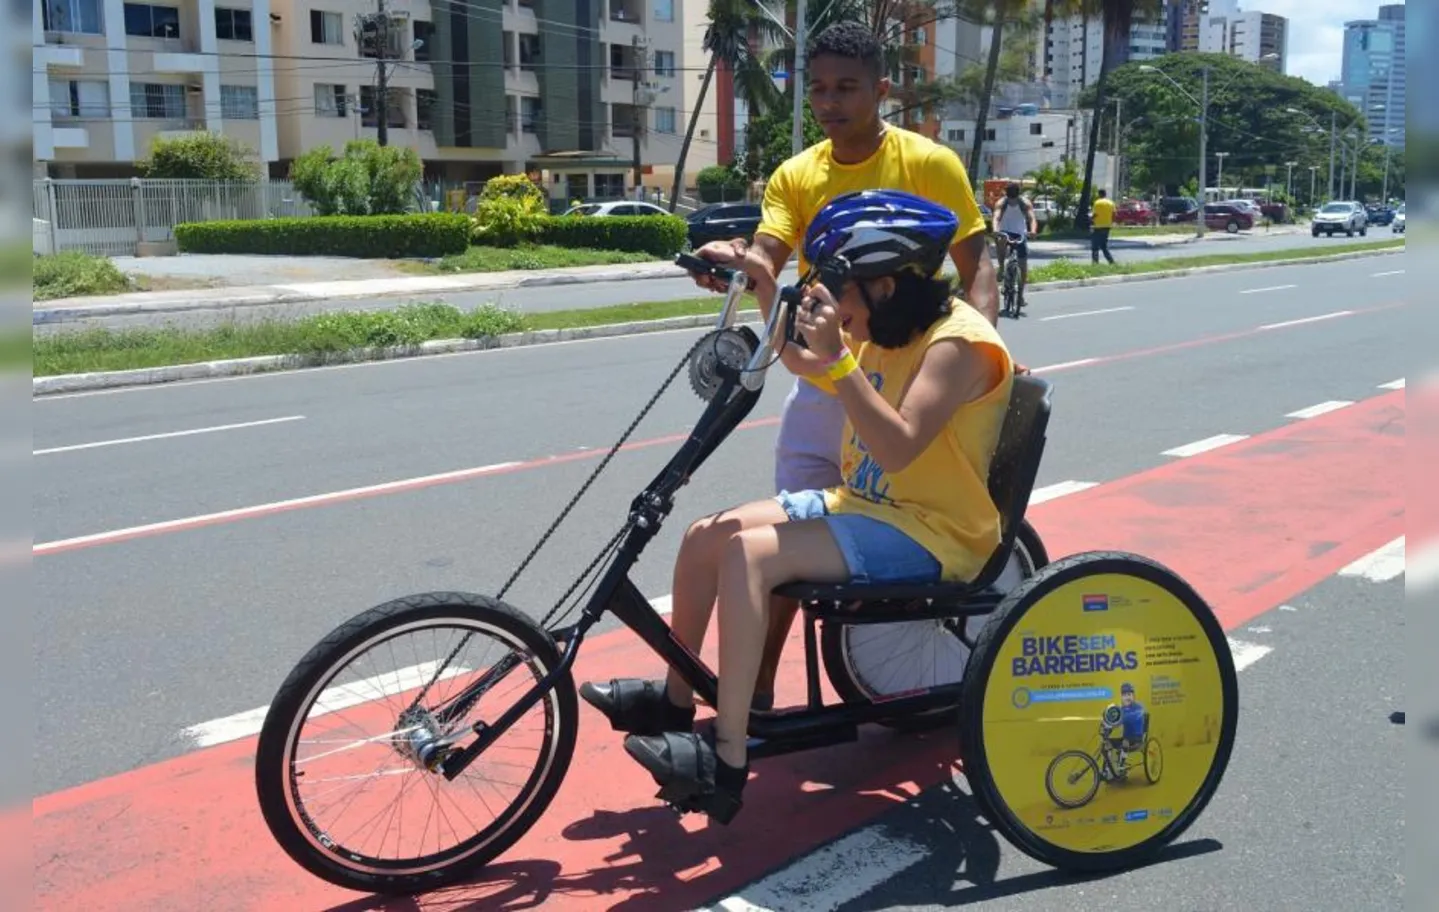 Trata-se de um passeio ciclístico inclusivo com bicicletas adaptadas para pessoas com deficiência.